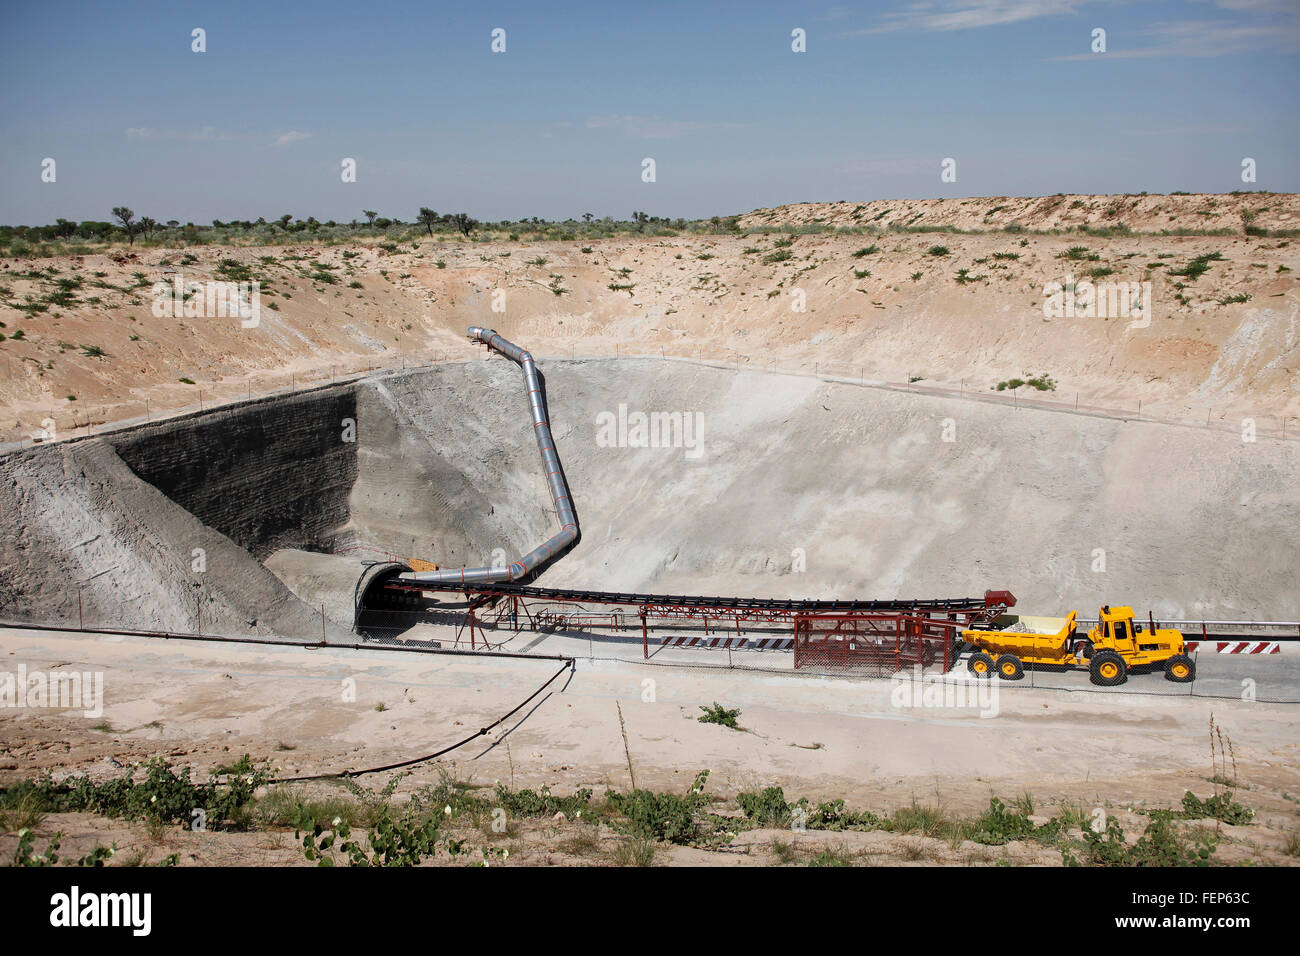 Ein Bergbau-Fahrzeug parkt vor den Toren am Eingang des einen Minenschacht geneigt Diamant in der Wüste Stockfoto